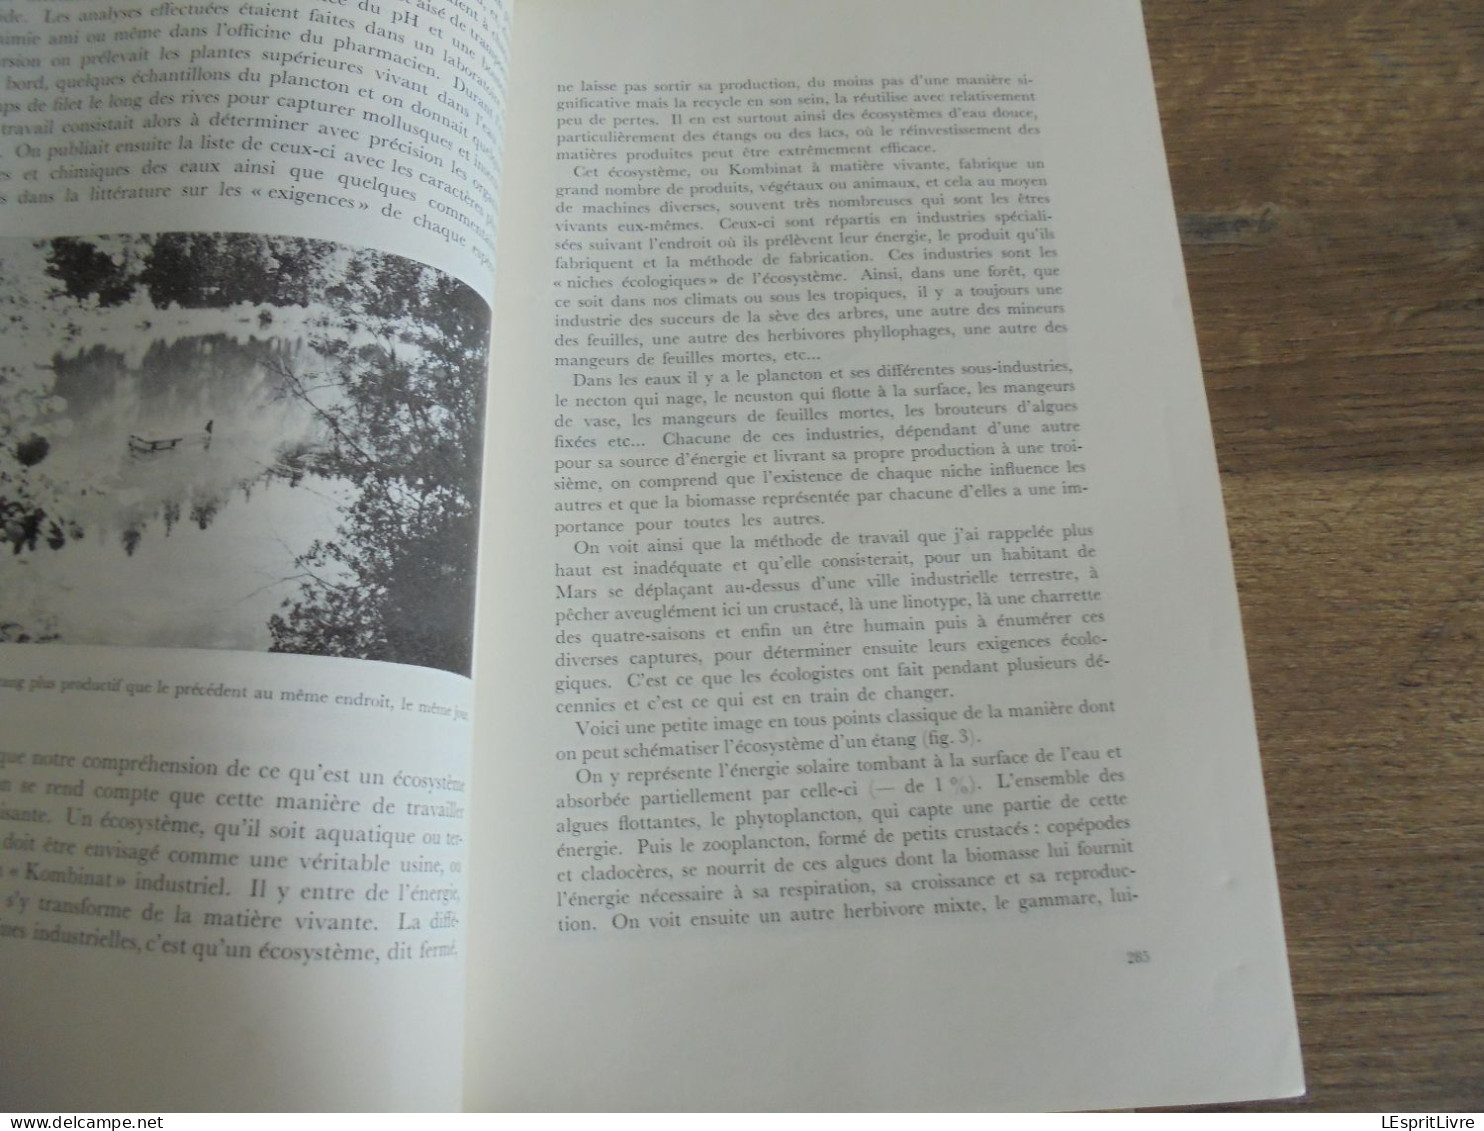 LES NATURALISTES BELGES N° 6 Année 1971 Régionalisme Etangs Eaux Douces Mirwart Ardenne Végétation Botanique Flore - Belgium